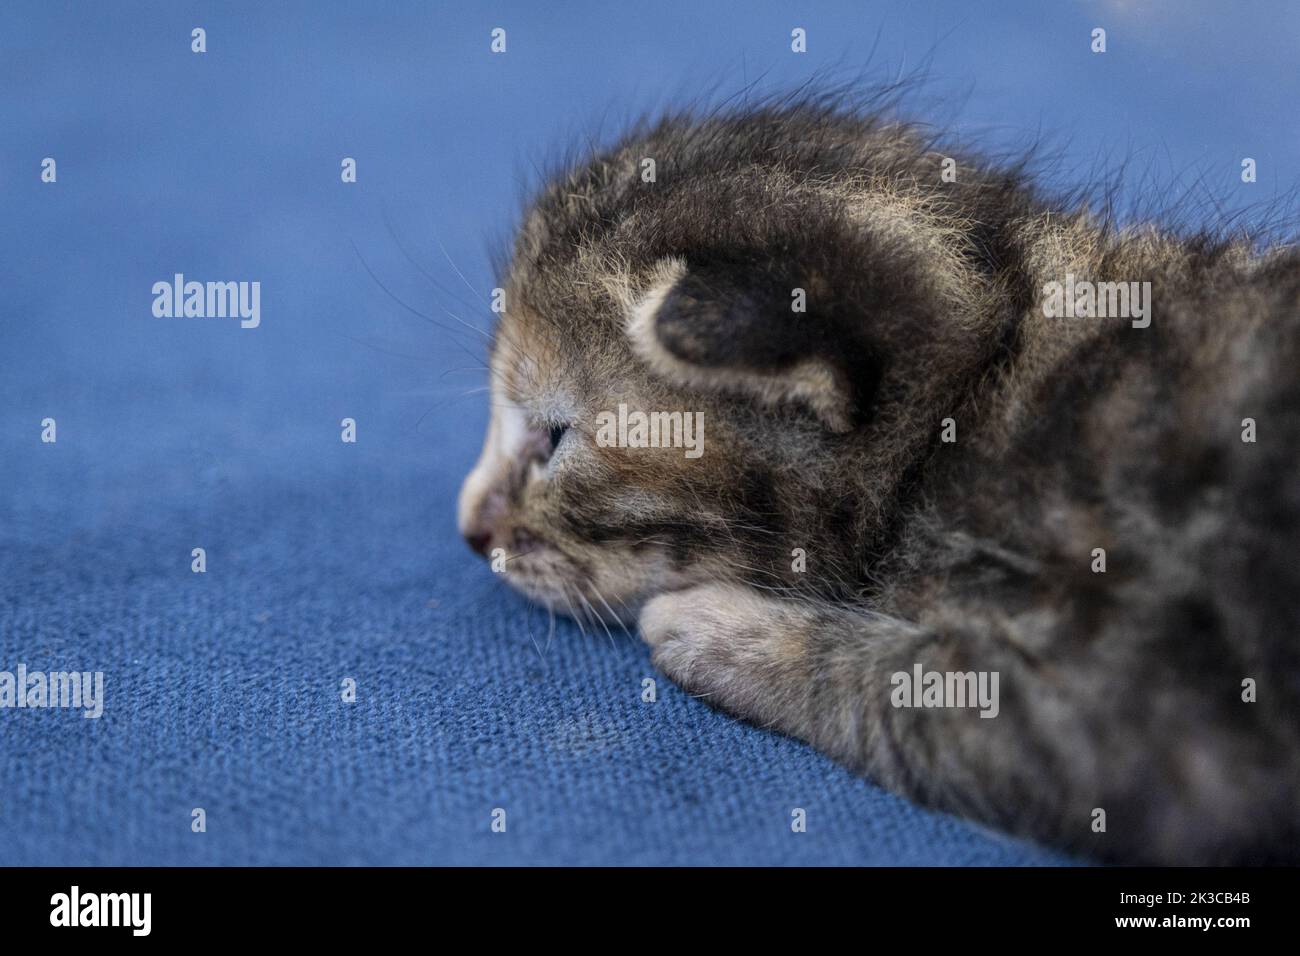 Neugeborene dunkelgrau tabby Low-Ear-Katze, Rückansicht Kätzchen-Konzept, halb offene Augen Neugeborene Katze legt sich hin, niedliches kleines Kätzchen-Konzept Stockfoto